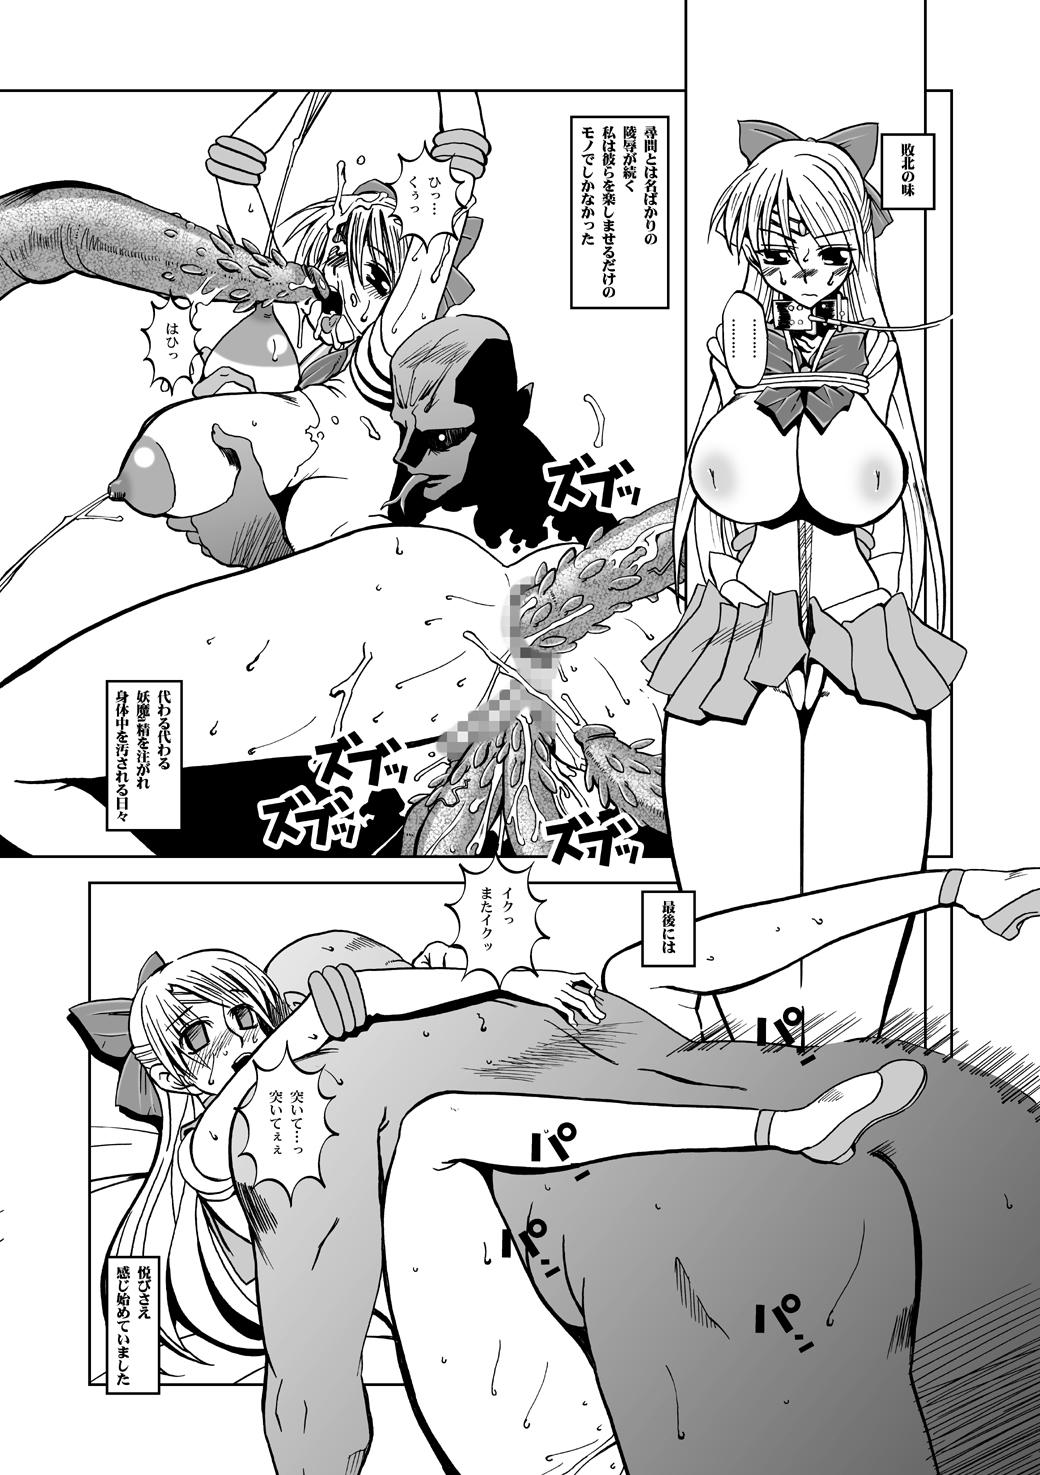 Uncut Selection:M - Sailor moon Amazing - Page 7